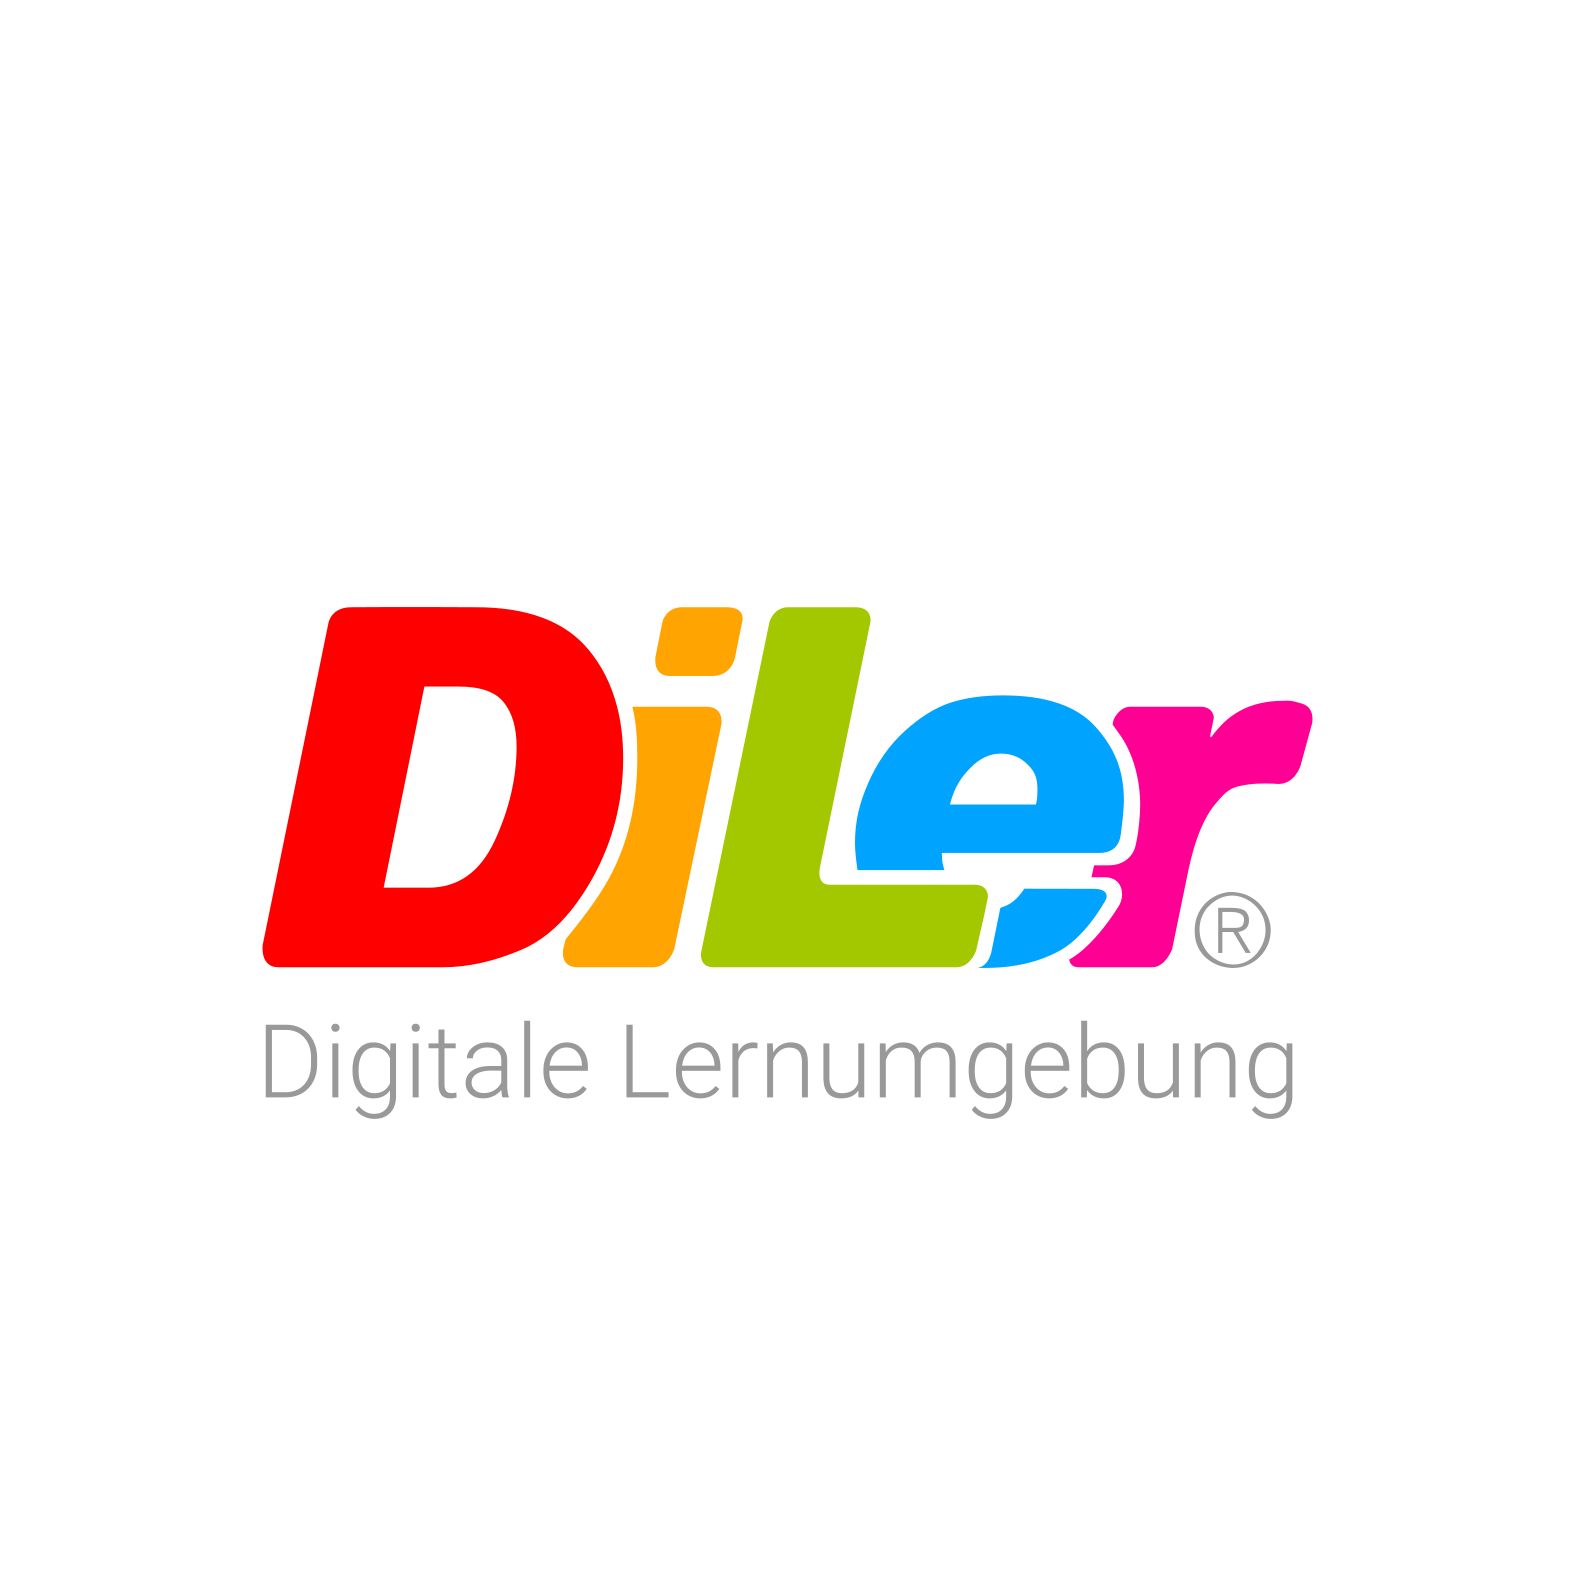 DiLer - Digitale Lernumgebung